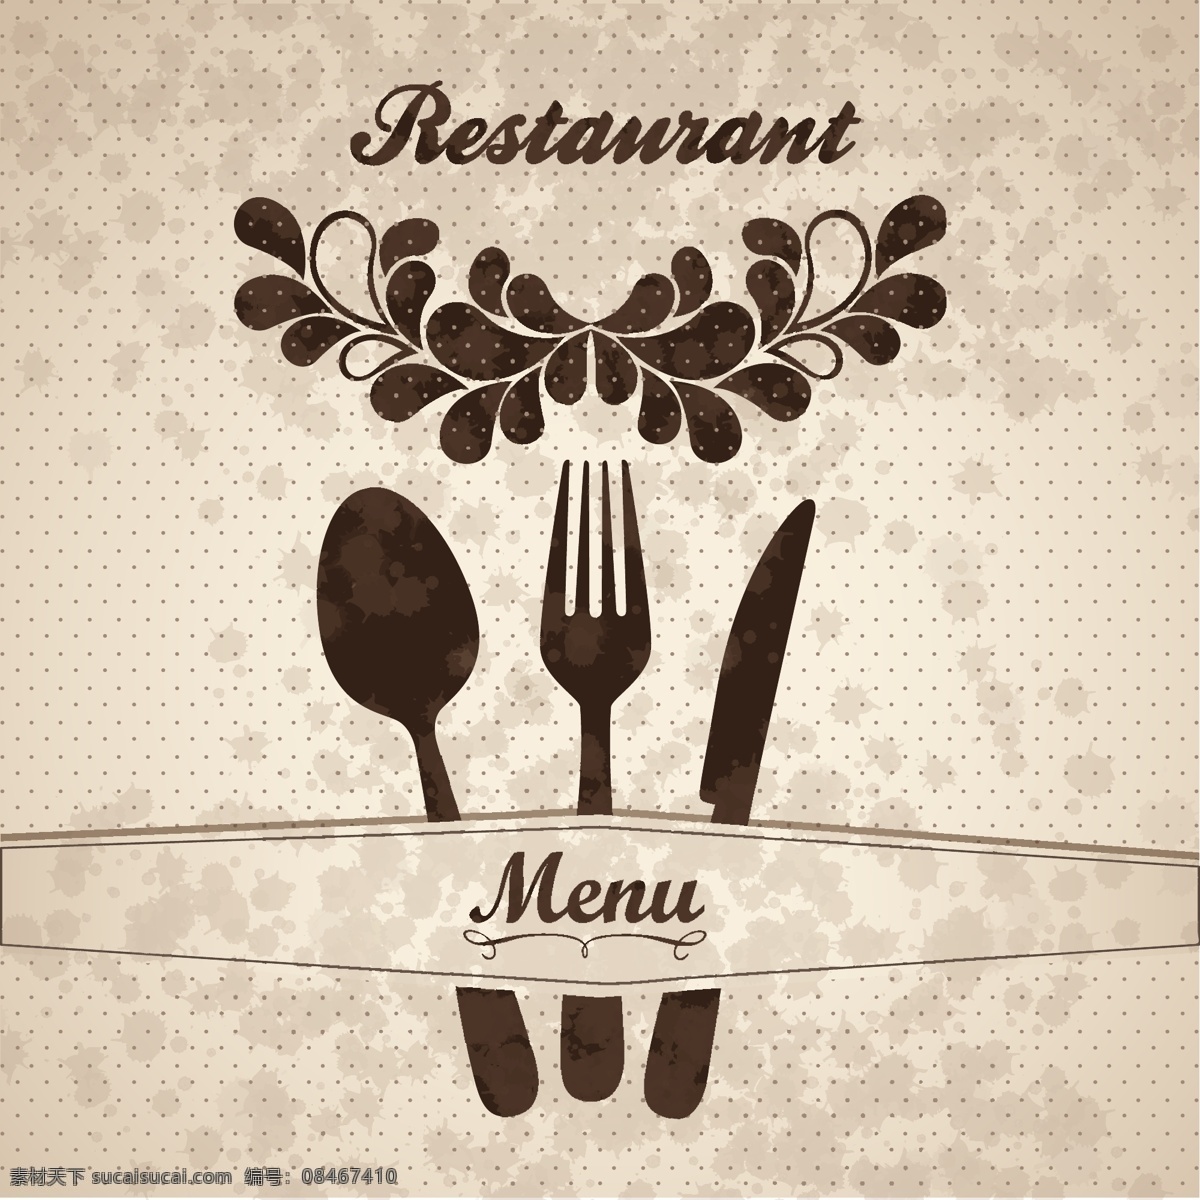 菜单 封面设计 矢量 餐厅 模版 倒茶 勺子 menu 饮食 封面 底纹 丝带 矢量素材 eps格式 白色